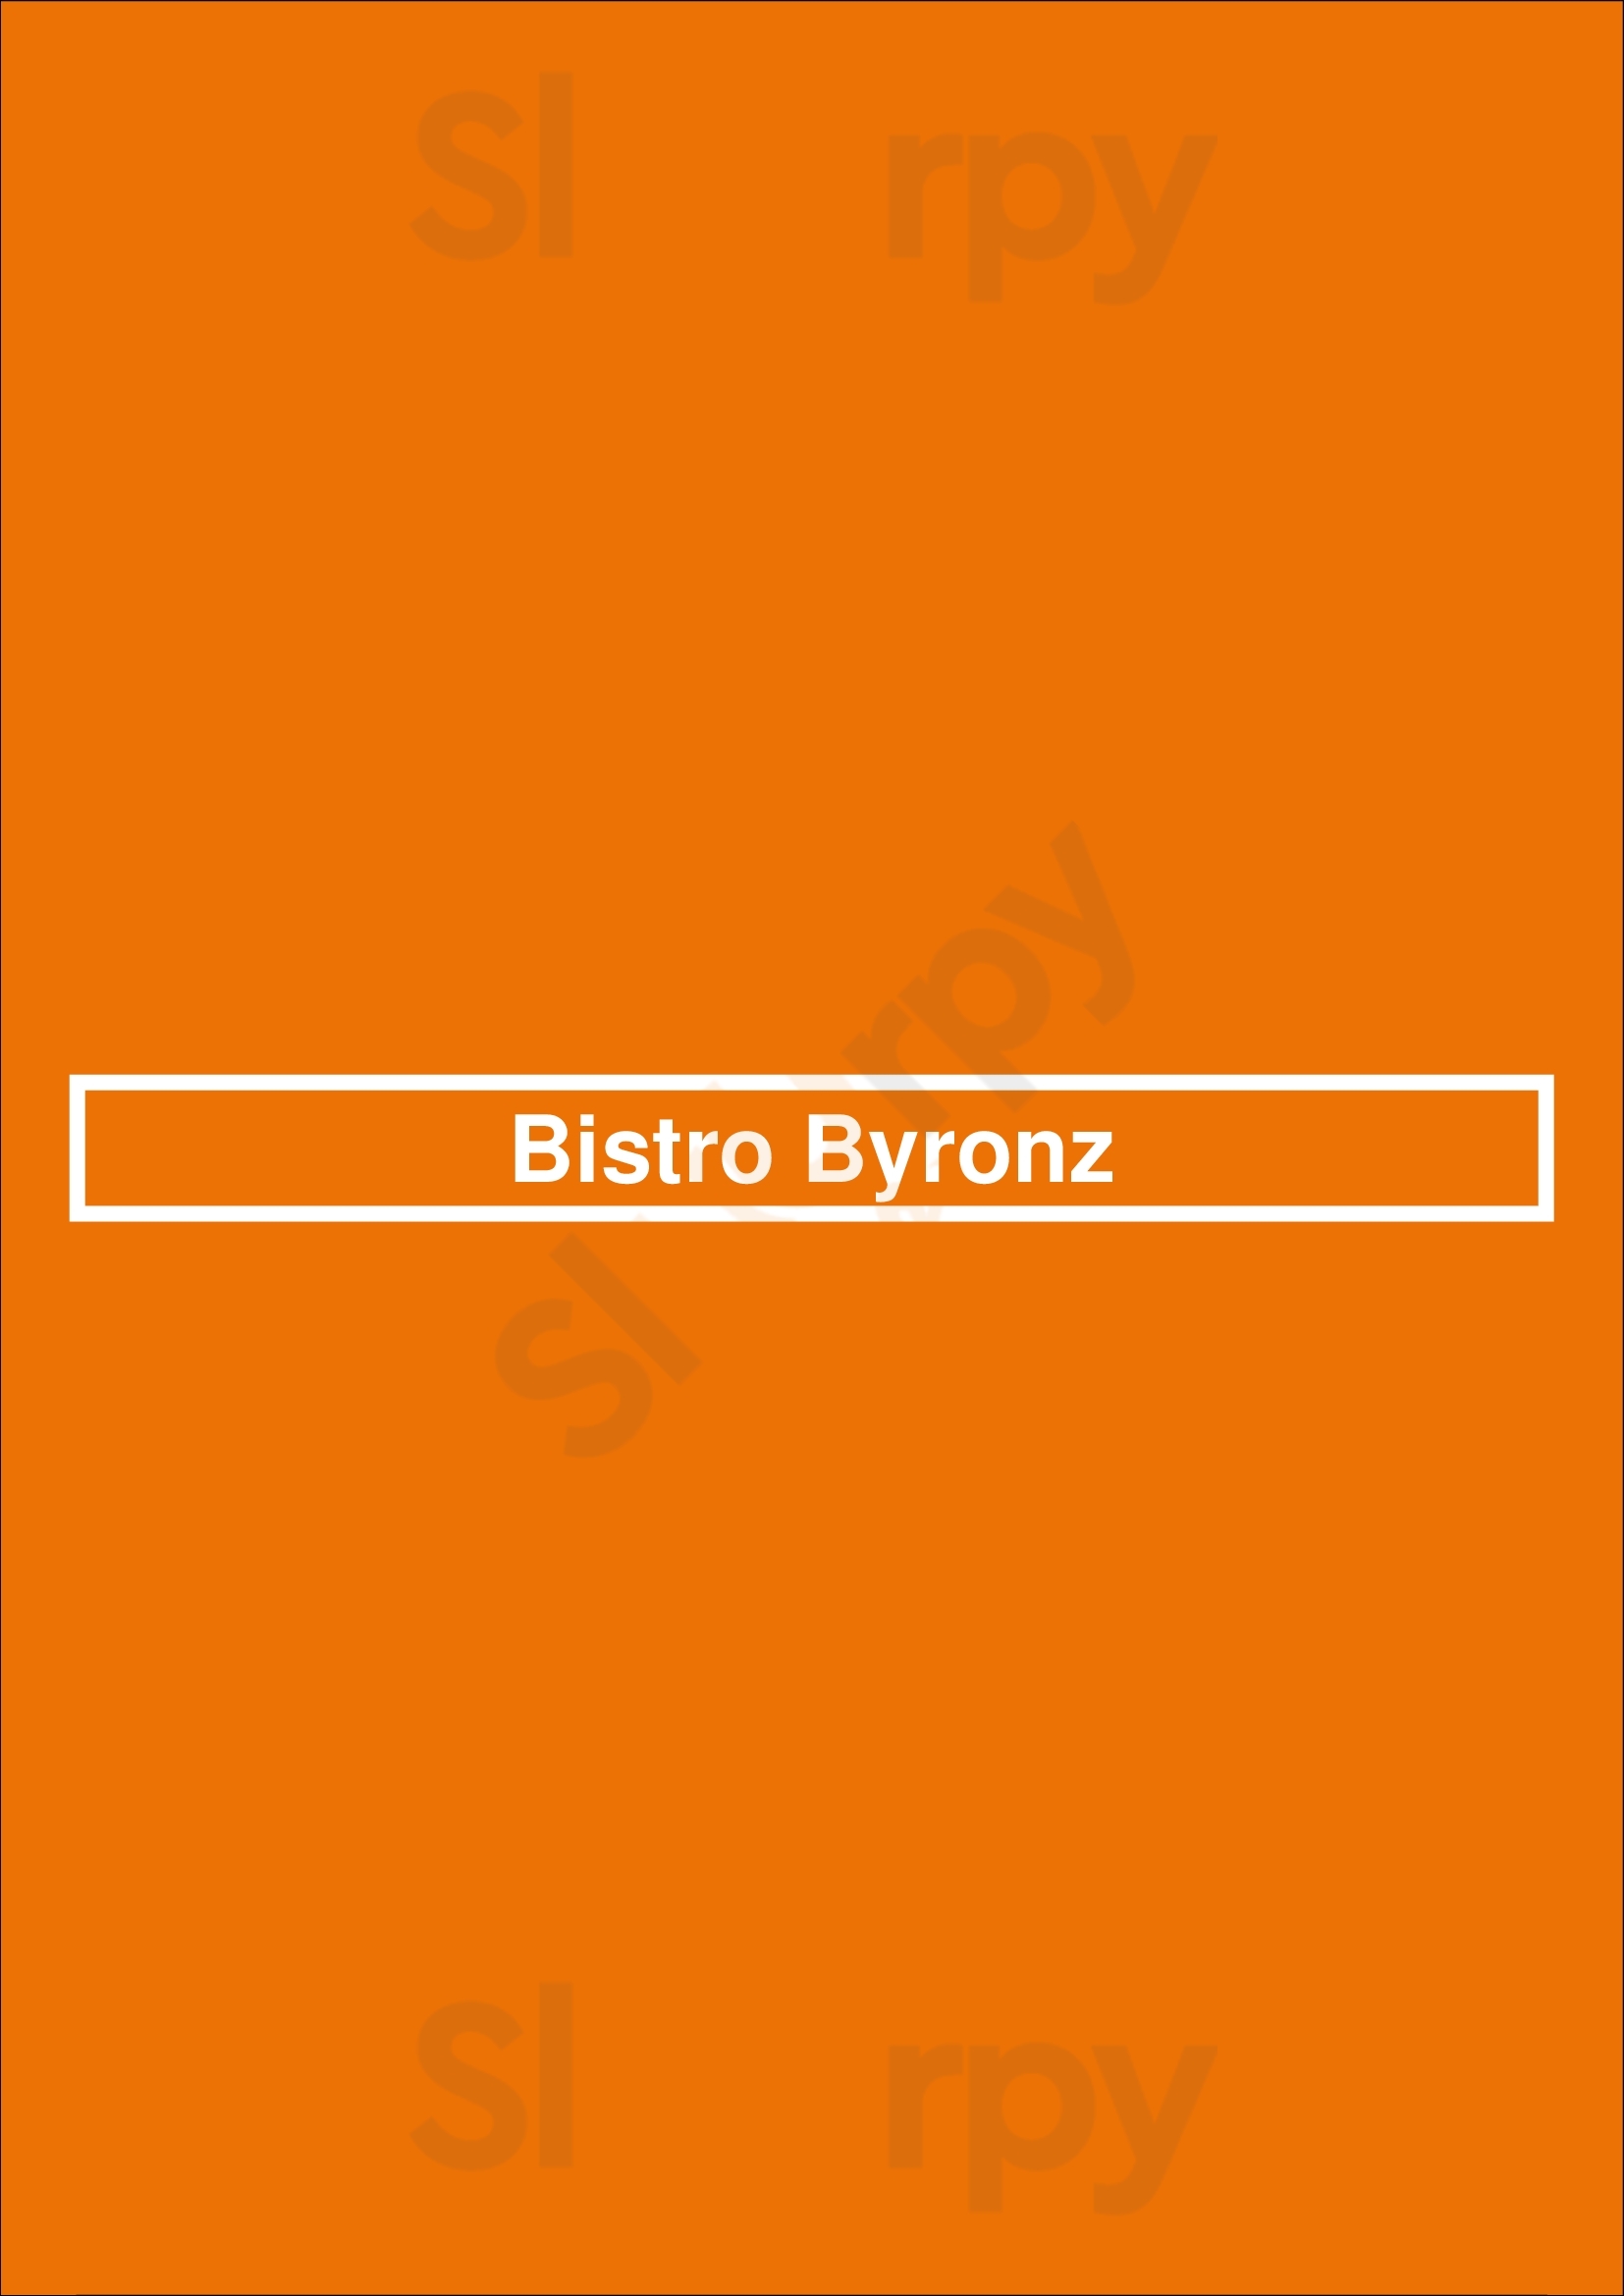 Bistro Byronz Baton Rouge Menu - 1